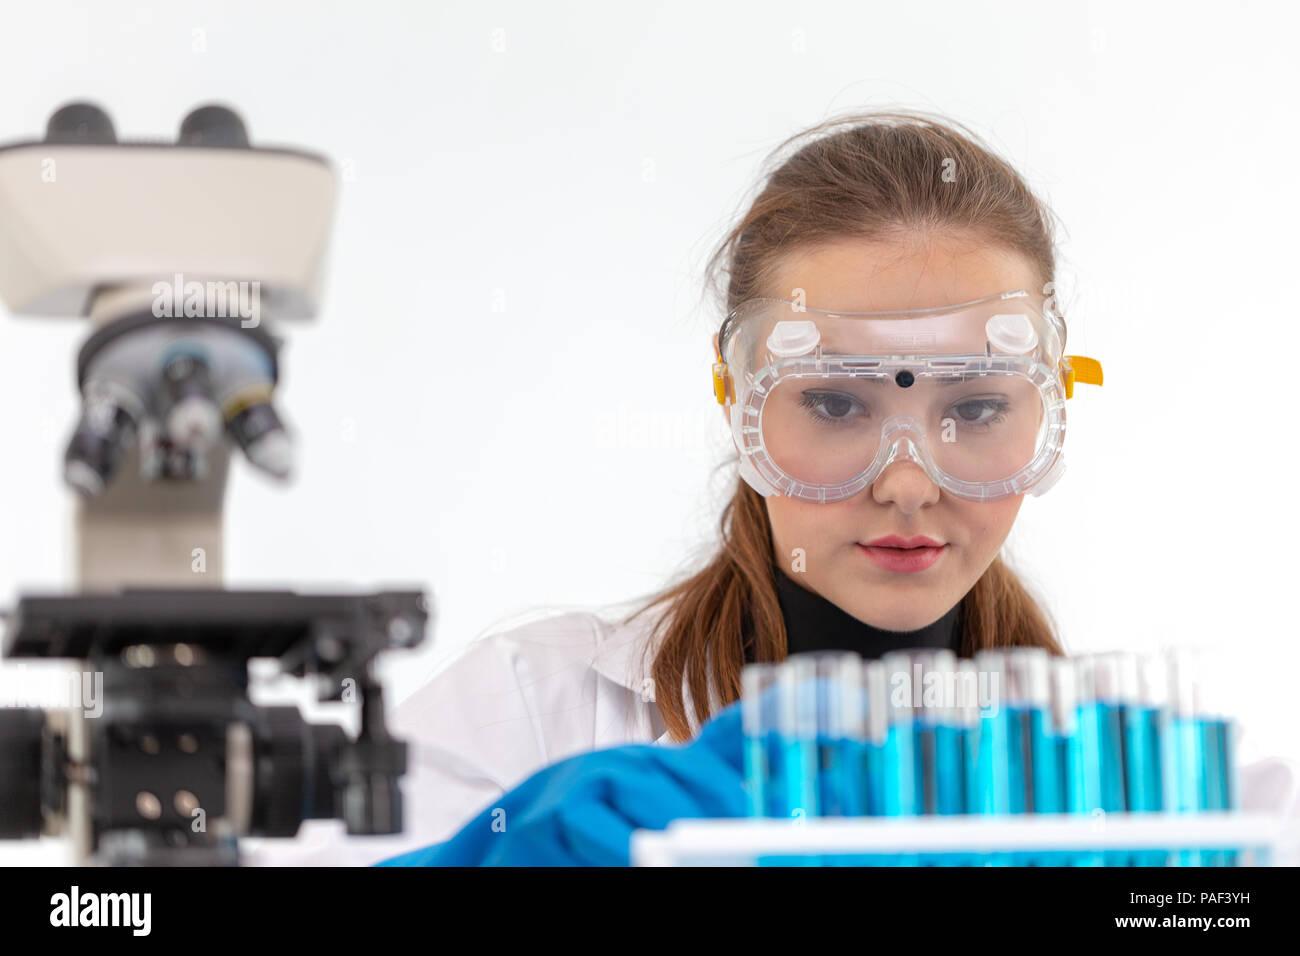 Gli scienziati sono ragazza di miscelazione di prodotti chimici o di fare qualche esperimento per sviluppare la medicina di laboratorio. Foto Stock